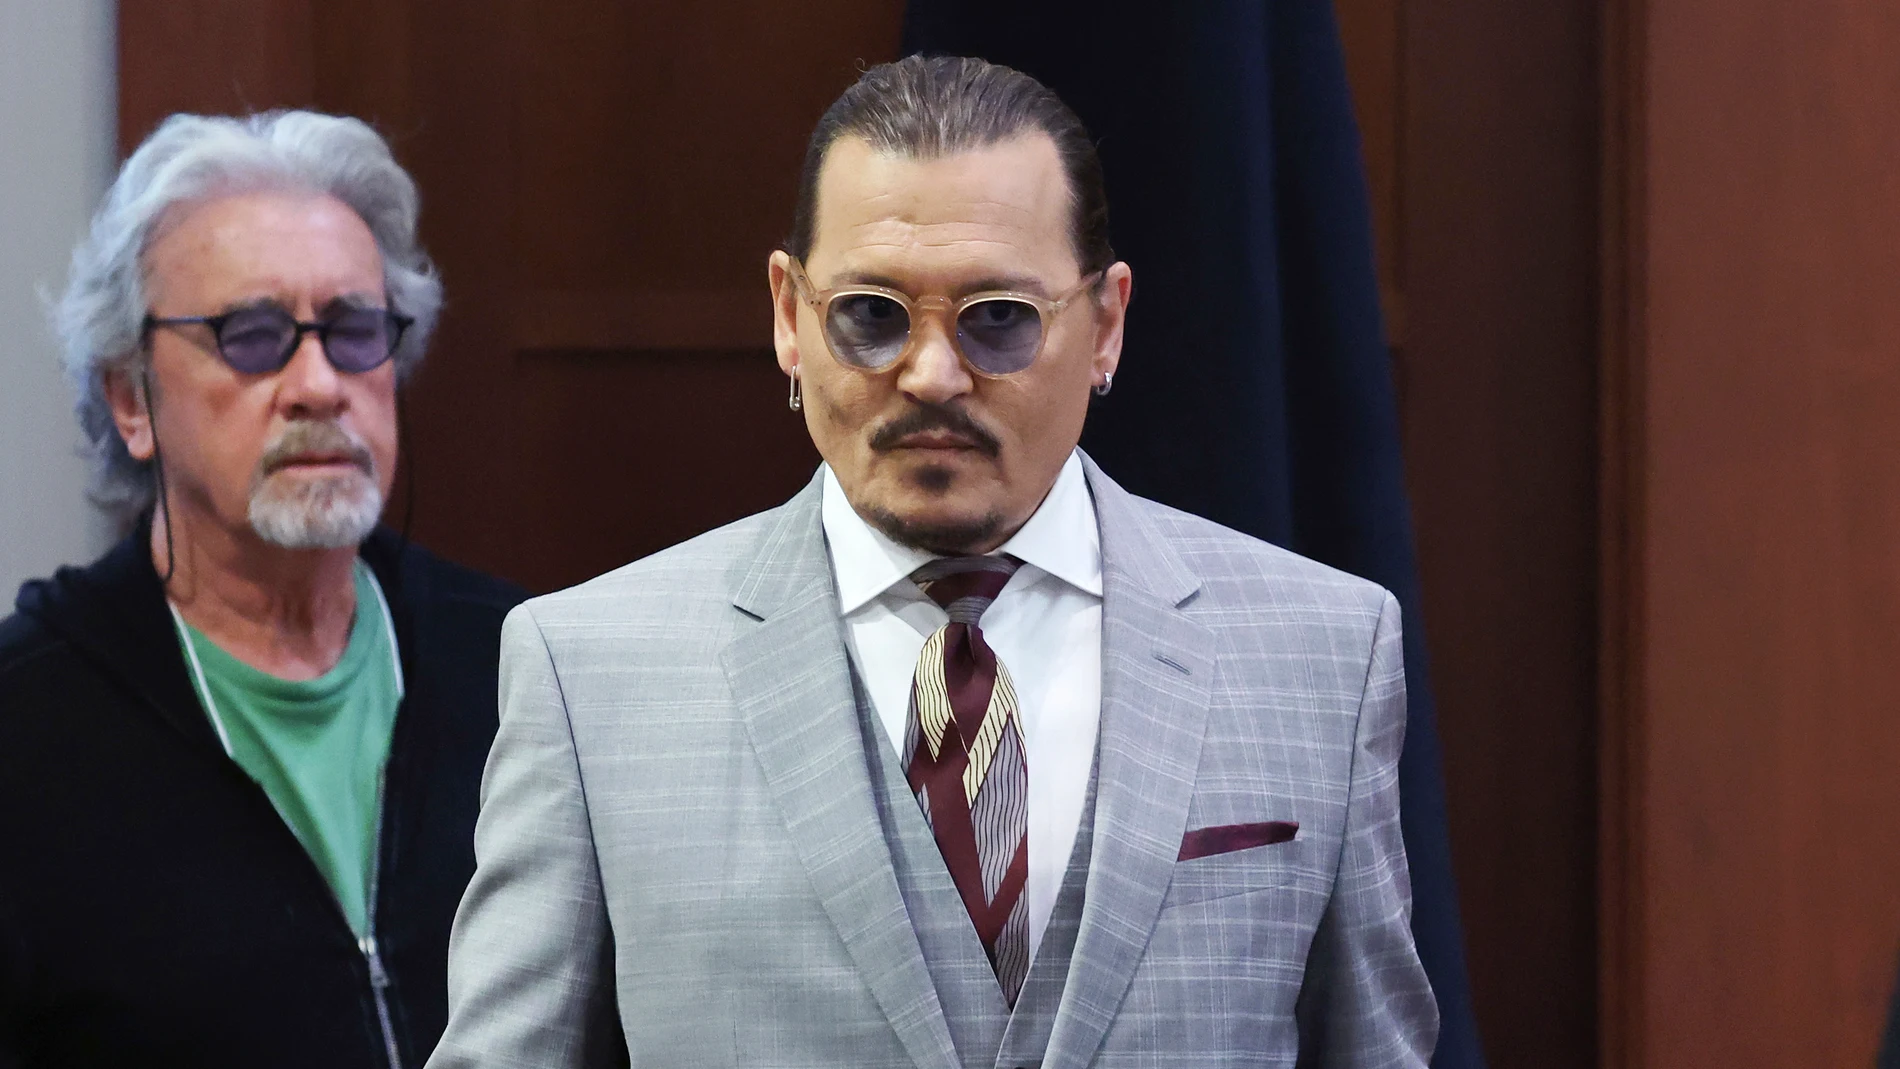 El proceso judicial que enfrenta a Johnny Depp y a Amber Heard ha llegado a su fin. Ahora, el jurado tiene la palabra. Por ello, se reunió este martes 31 de mayo con el objetivo de alcanzar un veredicto final. No obstante, no consiguieron tomar una decisión y el proceso se reanudará este miércoles 1 de unio. 